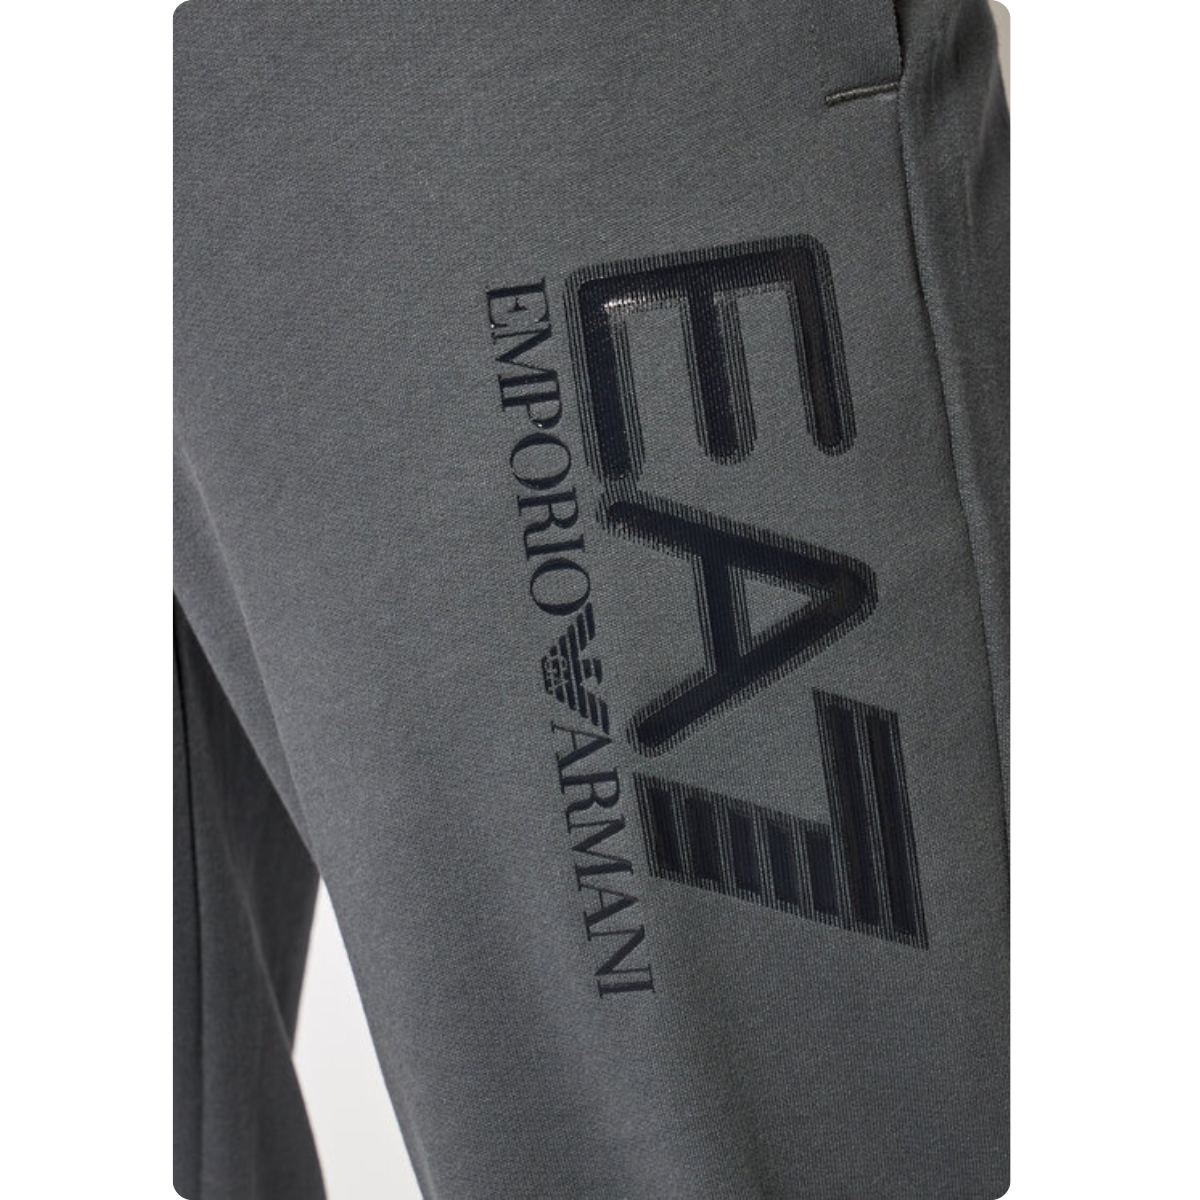 EA7 Emporio Armani - Tracksuit - Grey